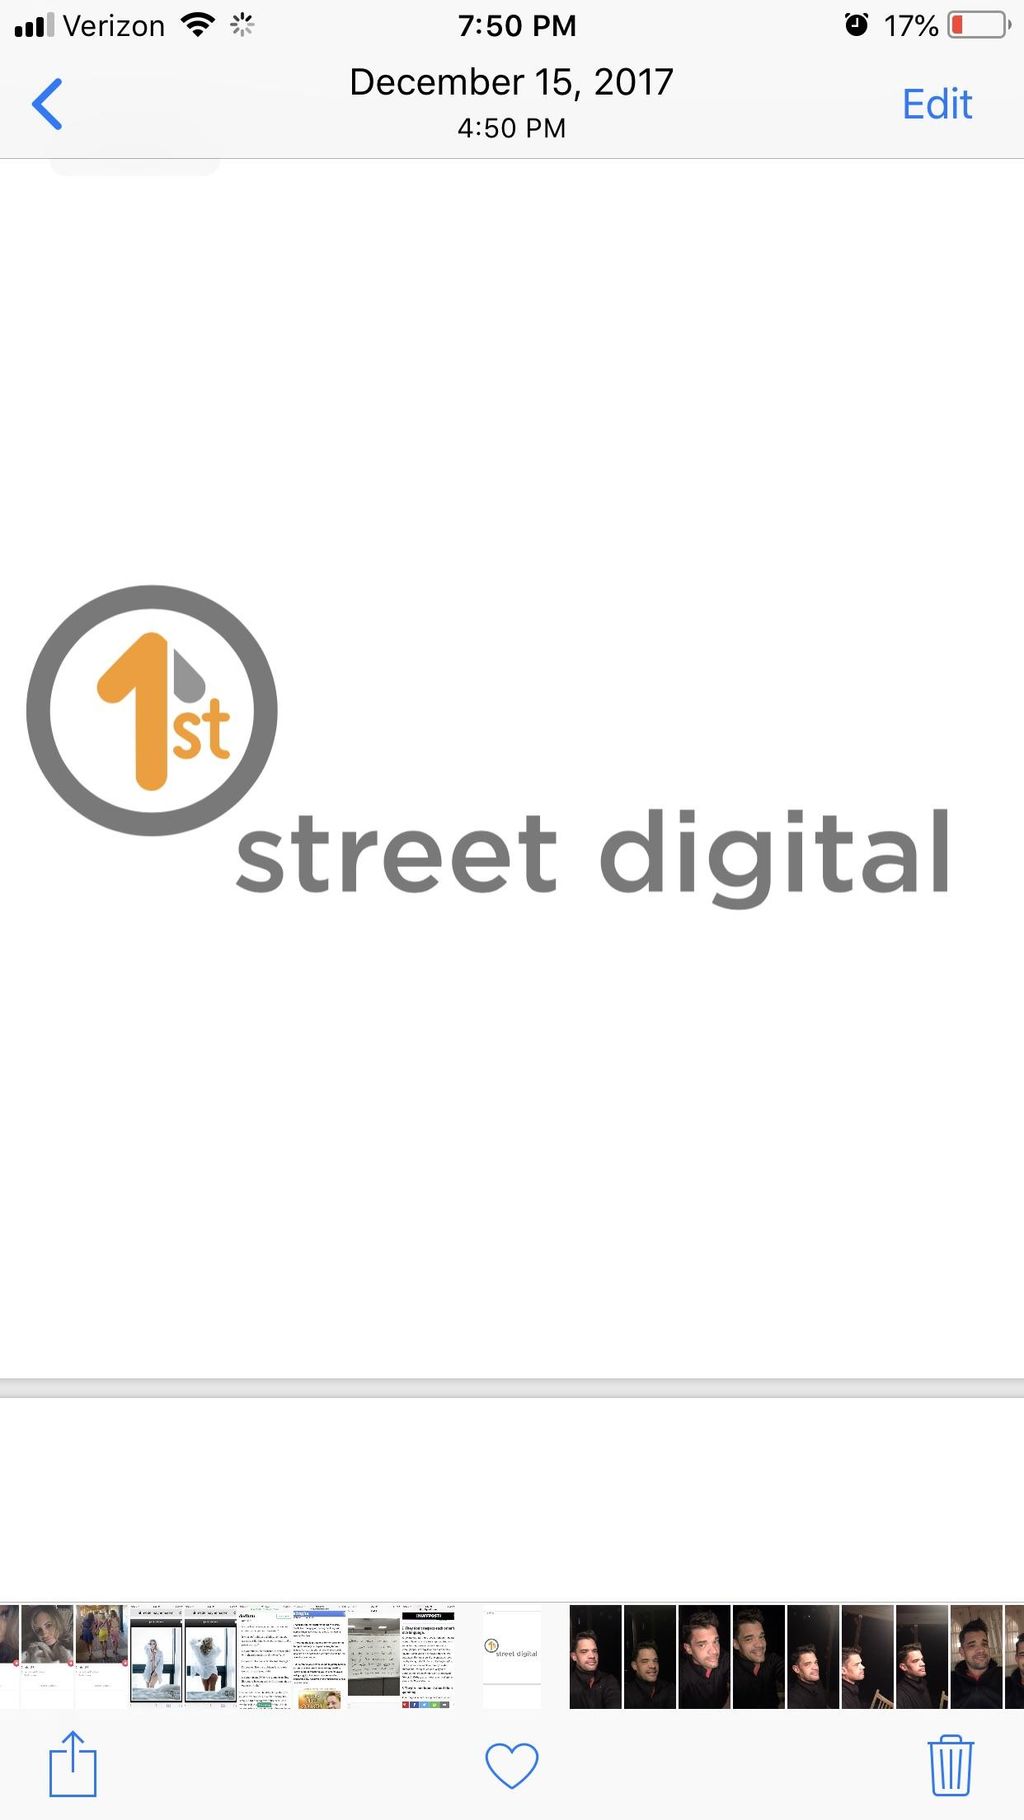 1st Street Digital